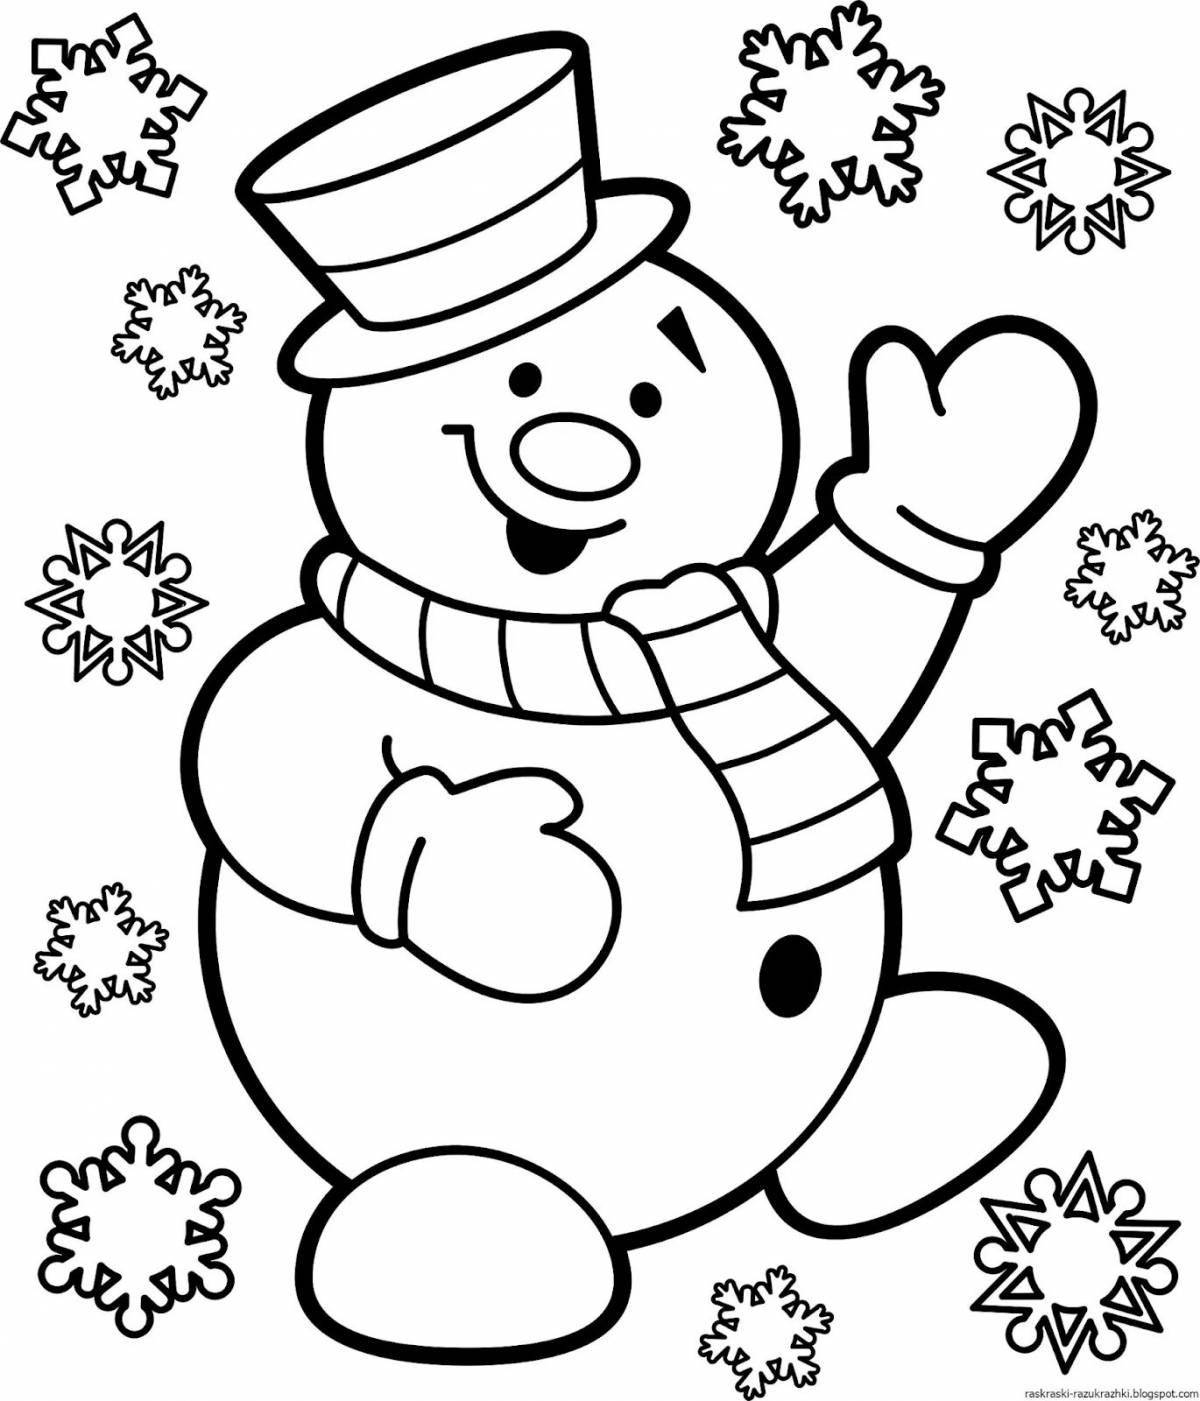 Светящаяся раскраска снеговик для детей 6-7 лет